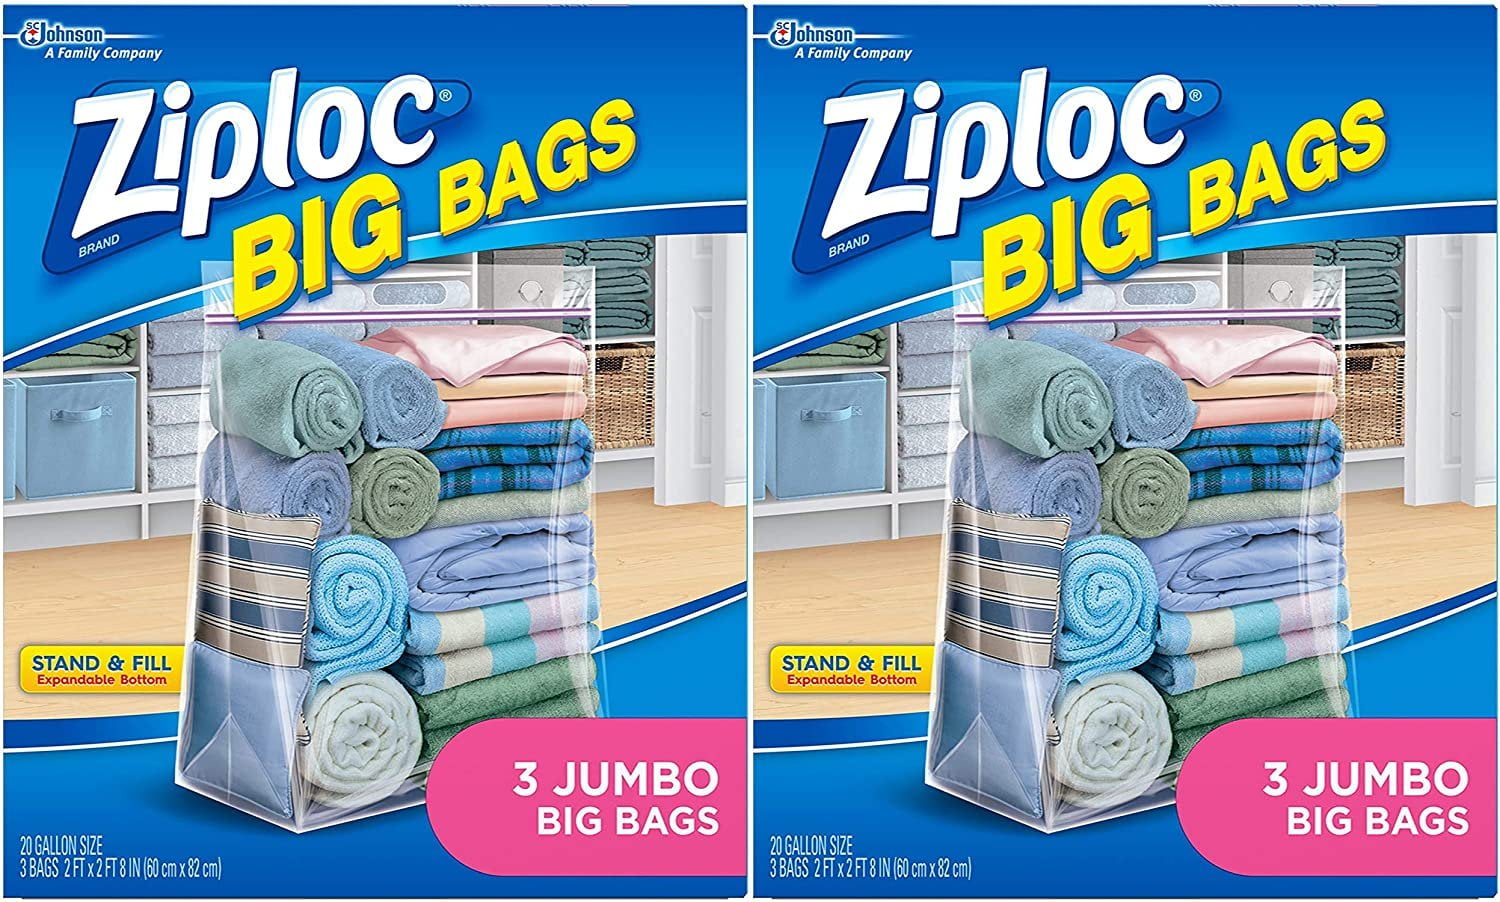 Ziploc Big Bags, XXL Double Zipper Bag, 3 CT (Pack of 2)